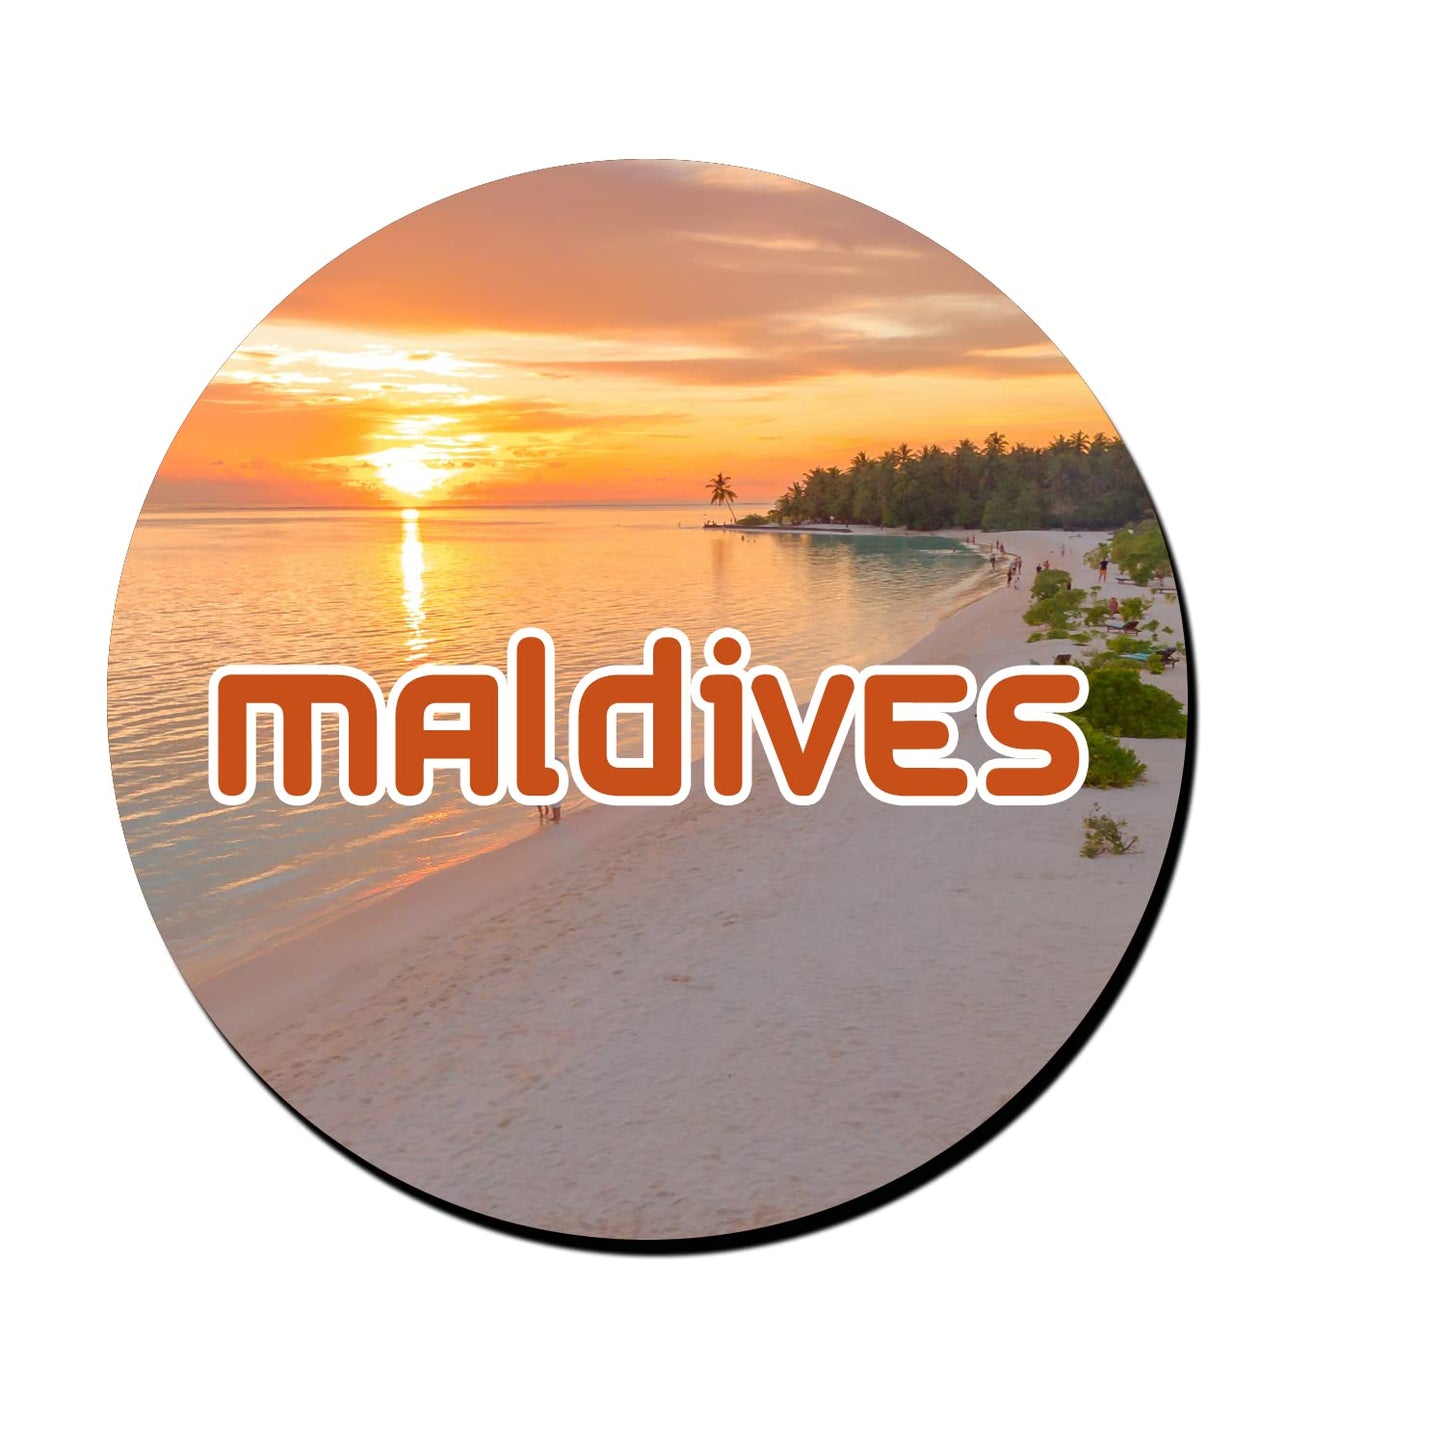 ShopTwiz Maldives Wonderful Decorative Large Fridge Magnet